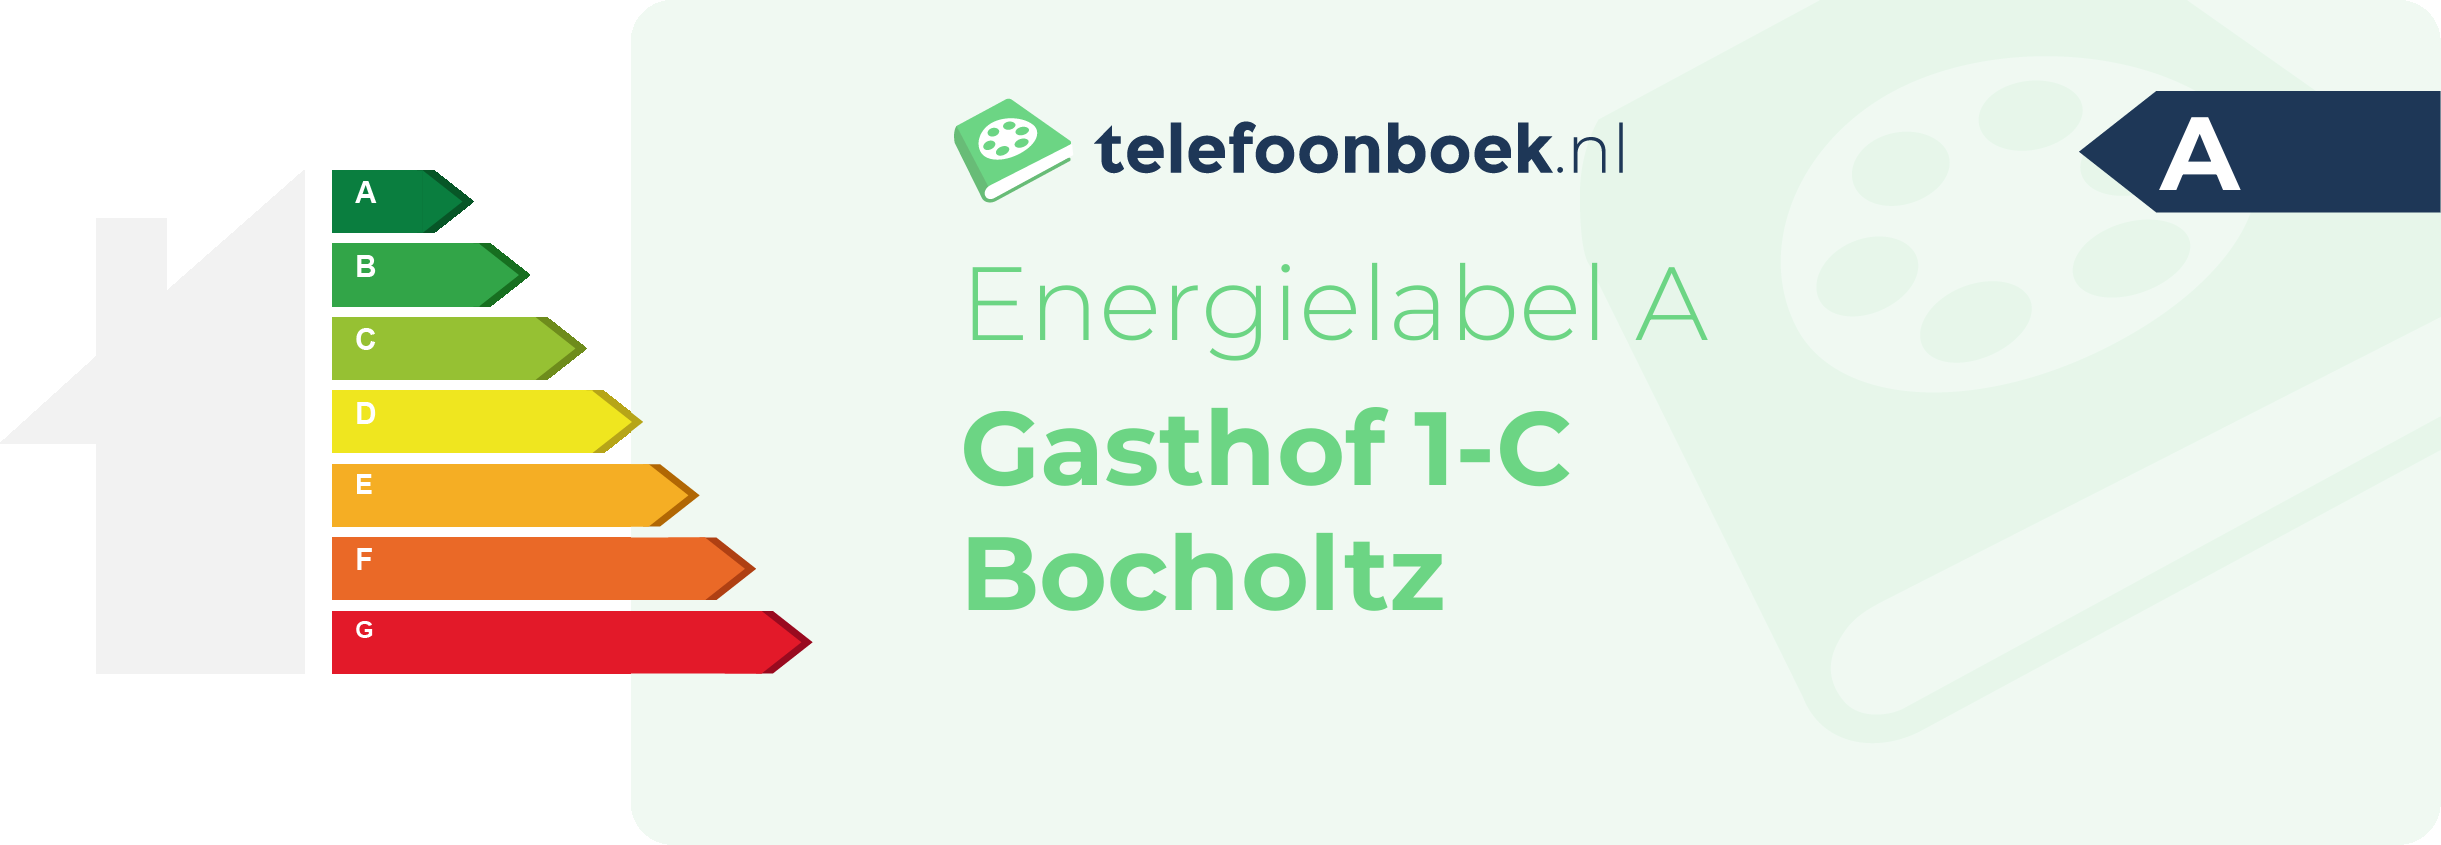 Energielabel Gasthof 1-C Bocholtz